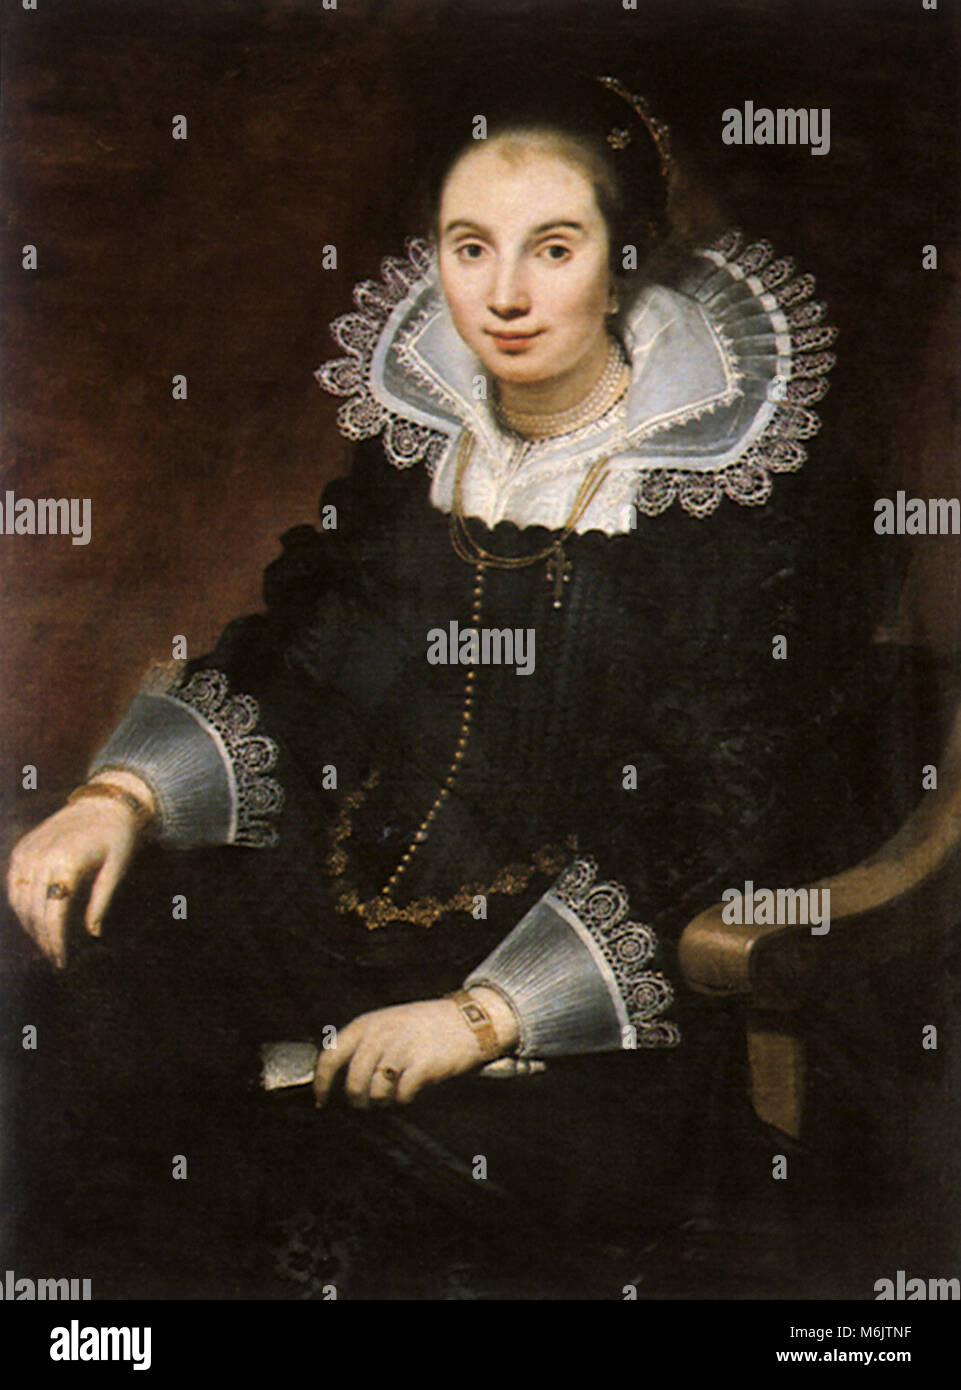 Portrait of a Lady with a Fan, Vos, Cornelis de, 1628. Stock Photo